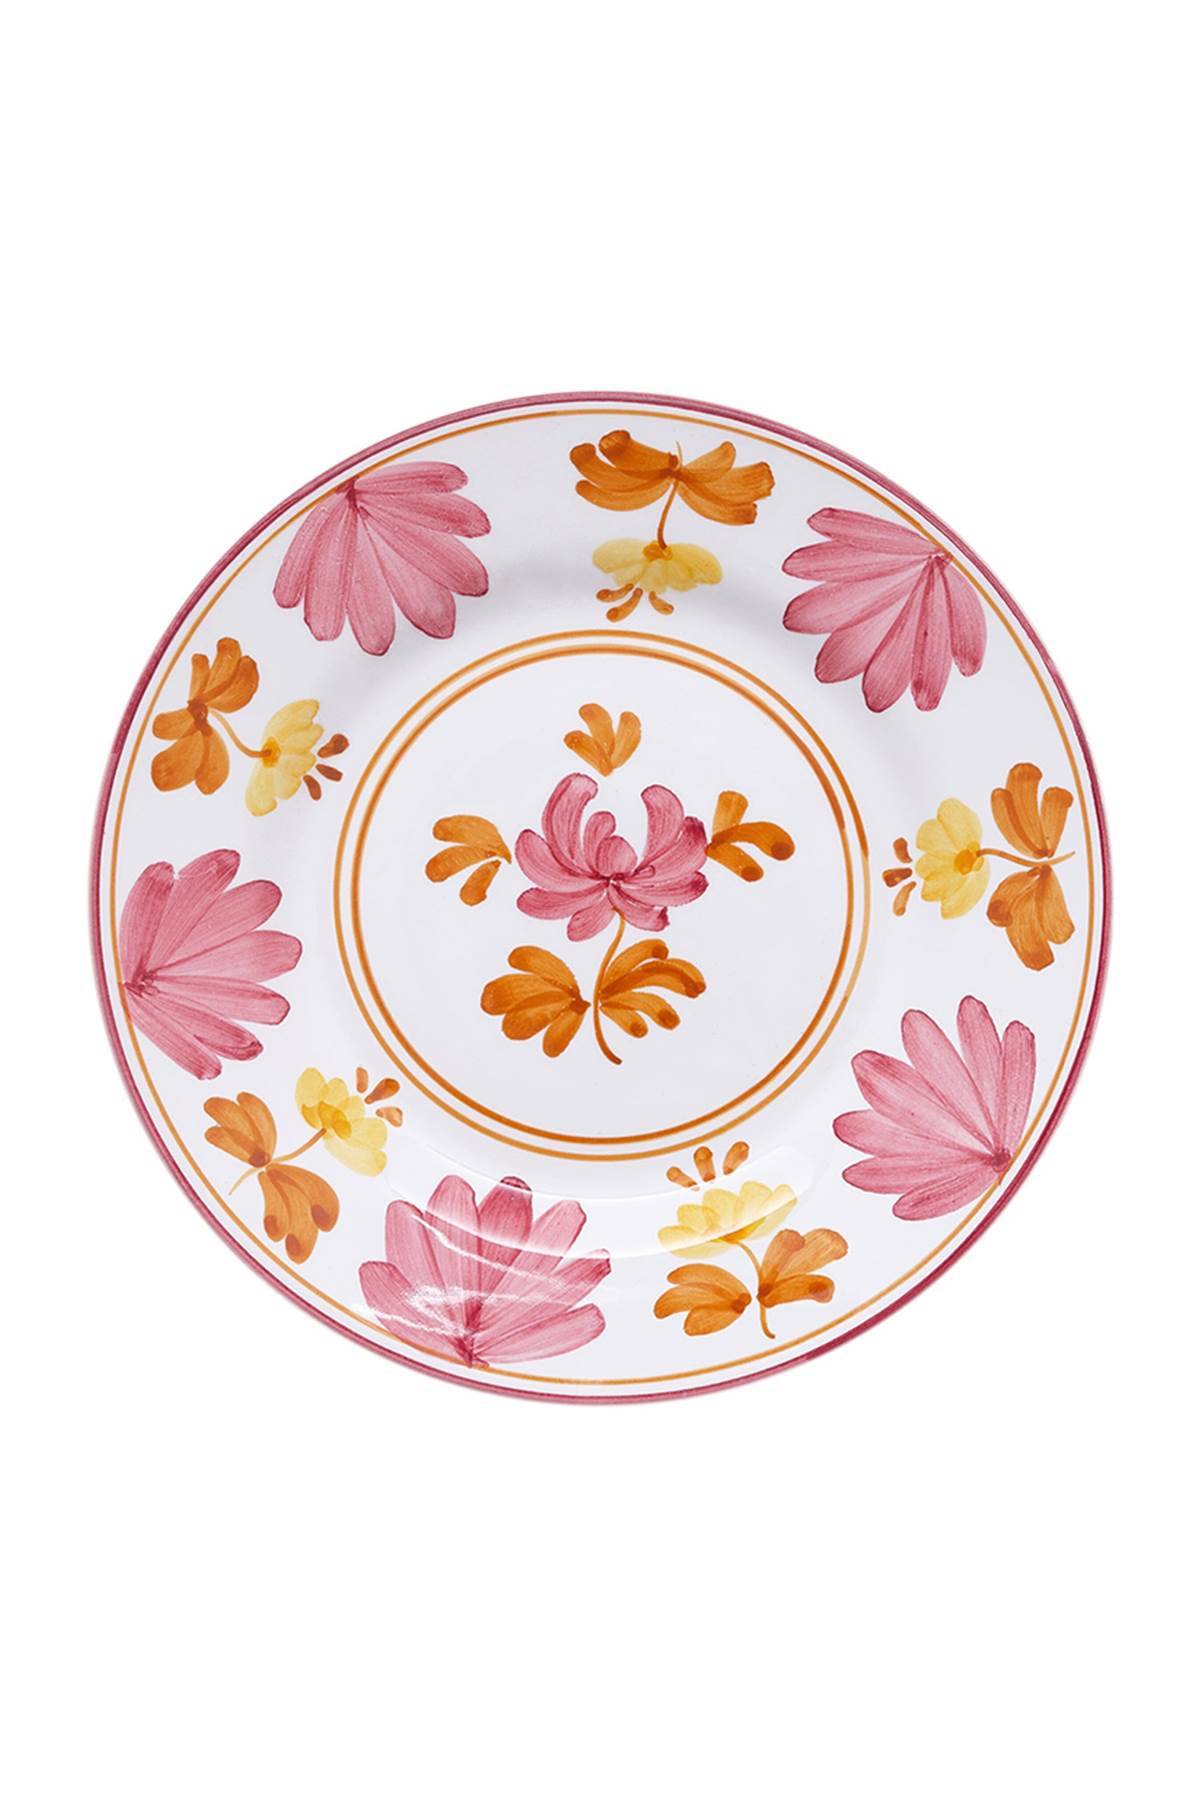 CABANA CABANA blossom fruit plate